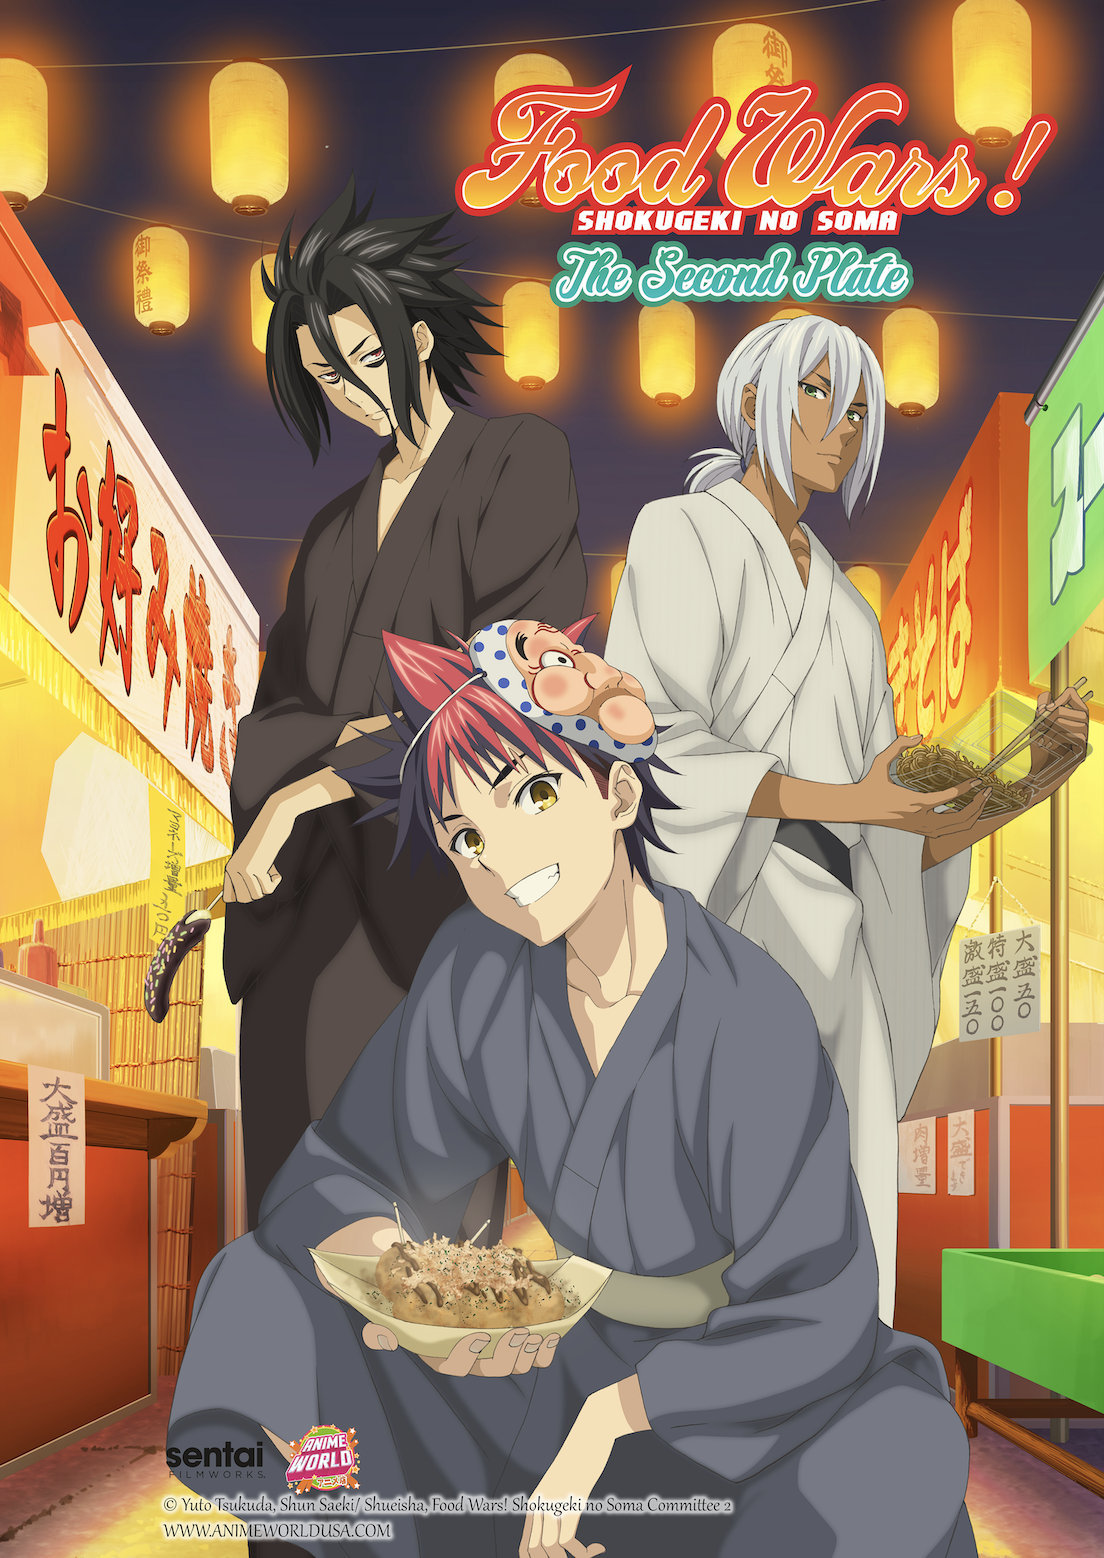 Food Wars Shokugeki No Soma Season 1-5 (DVD) for sale online